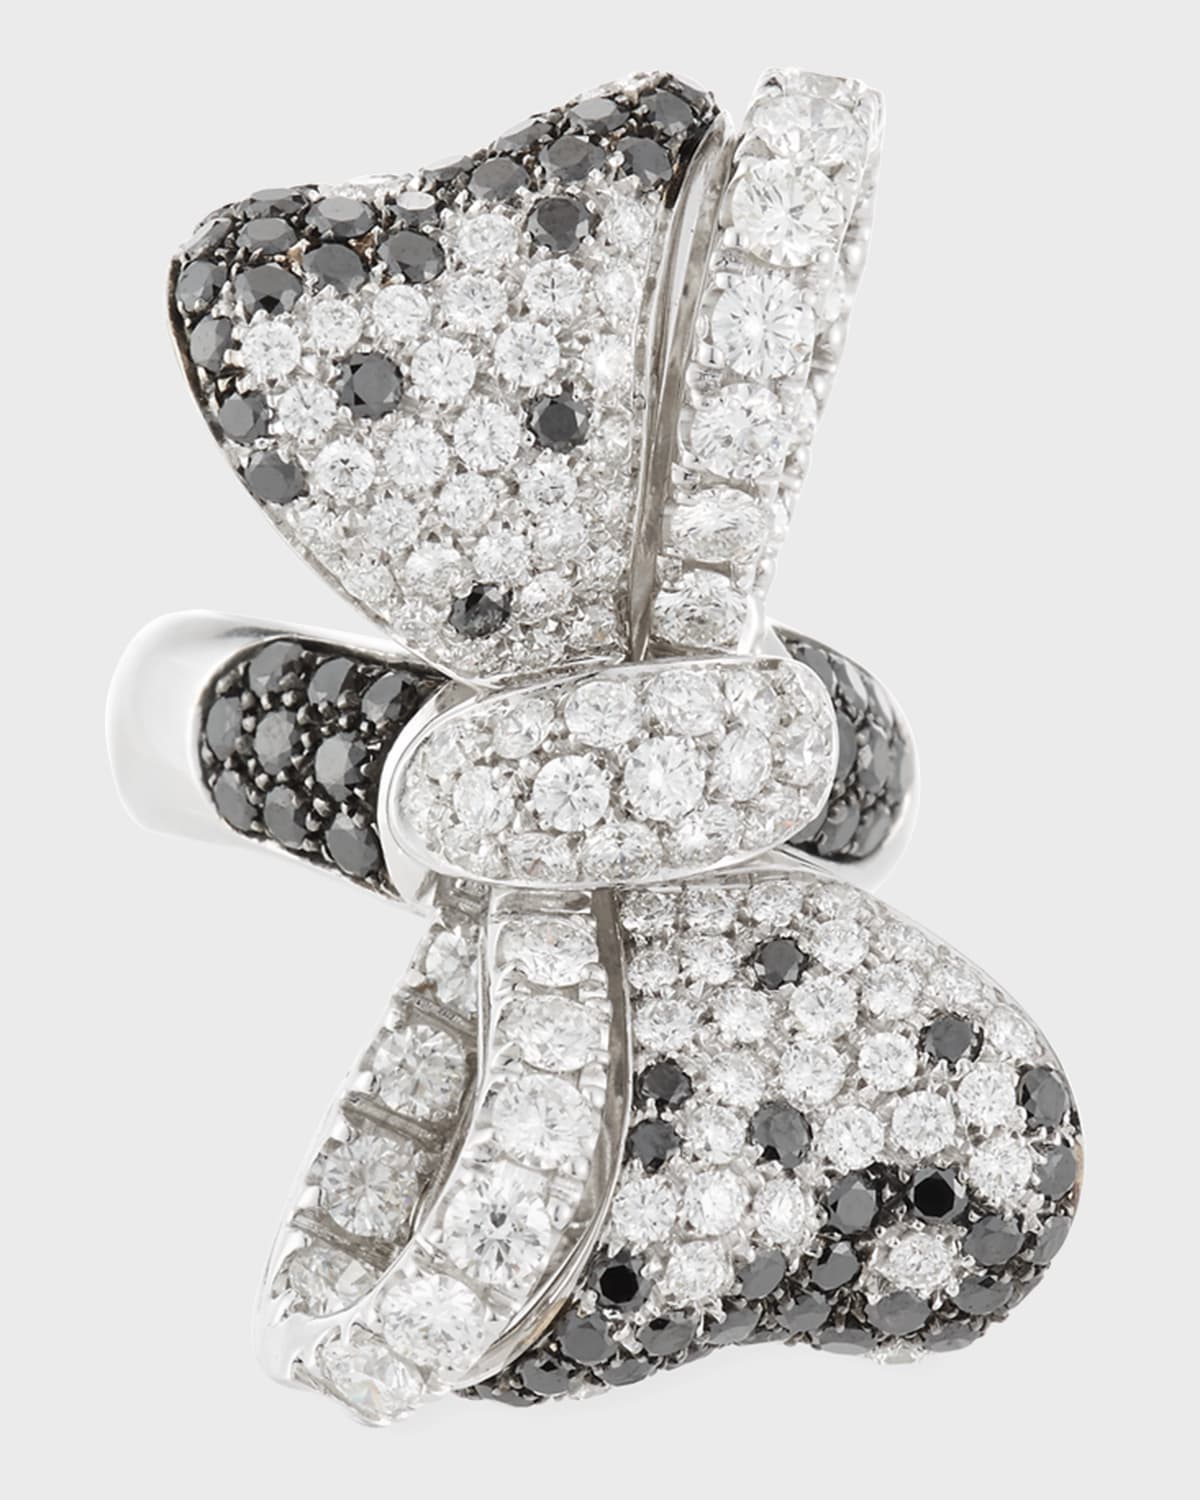 White & Black Diamond Bow Tie Ring, Size 7